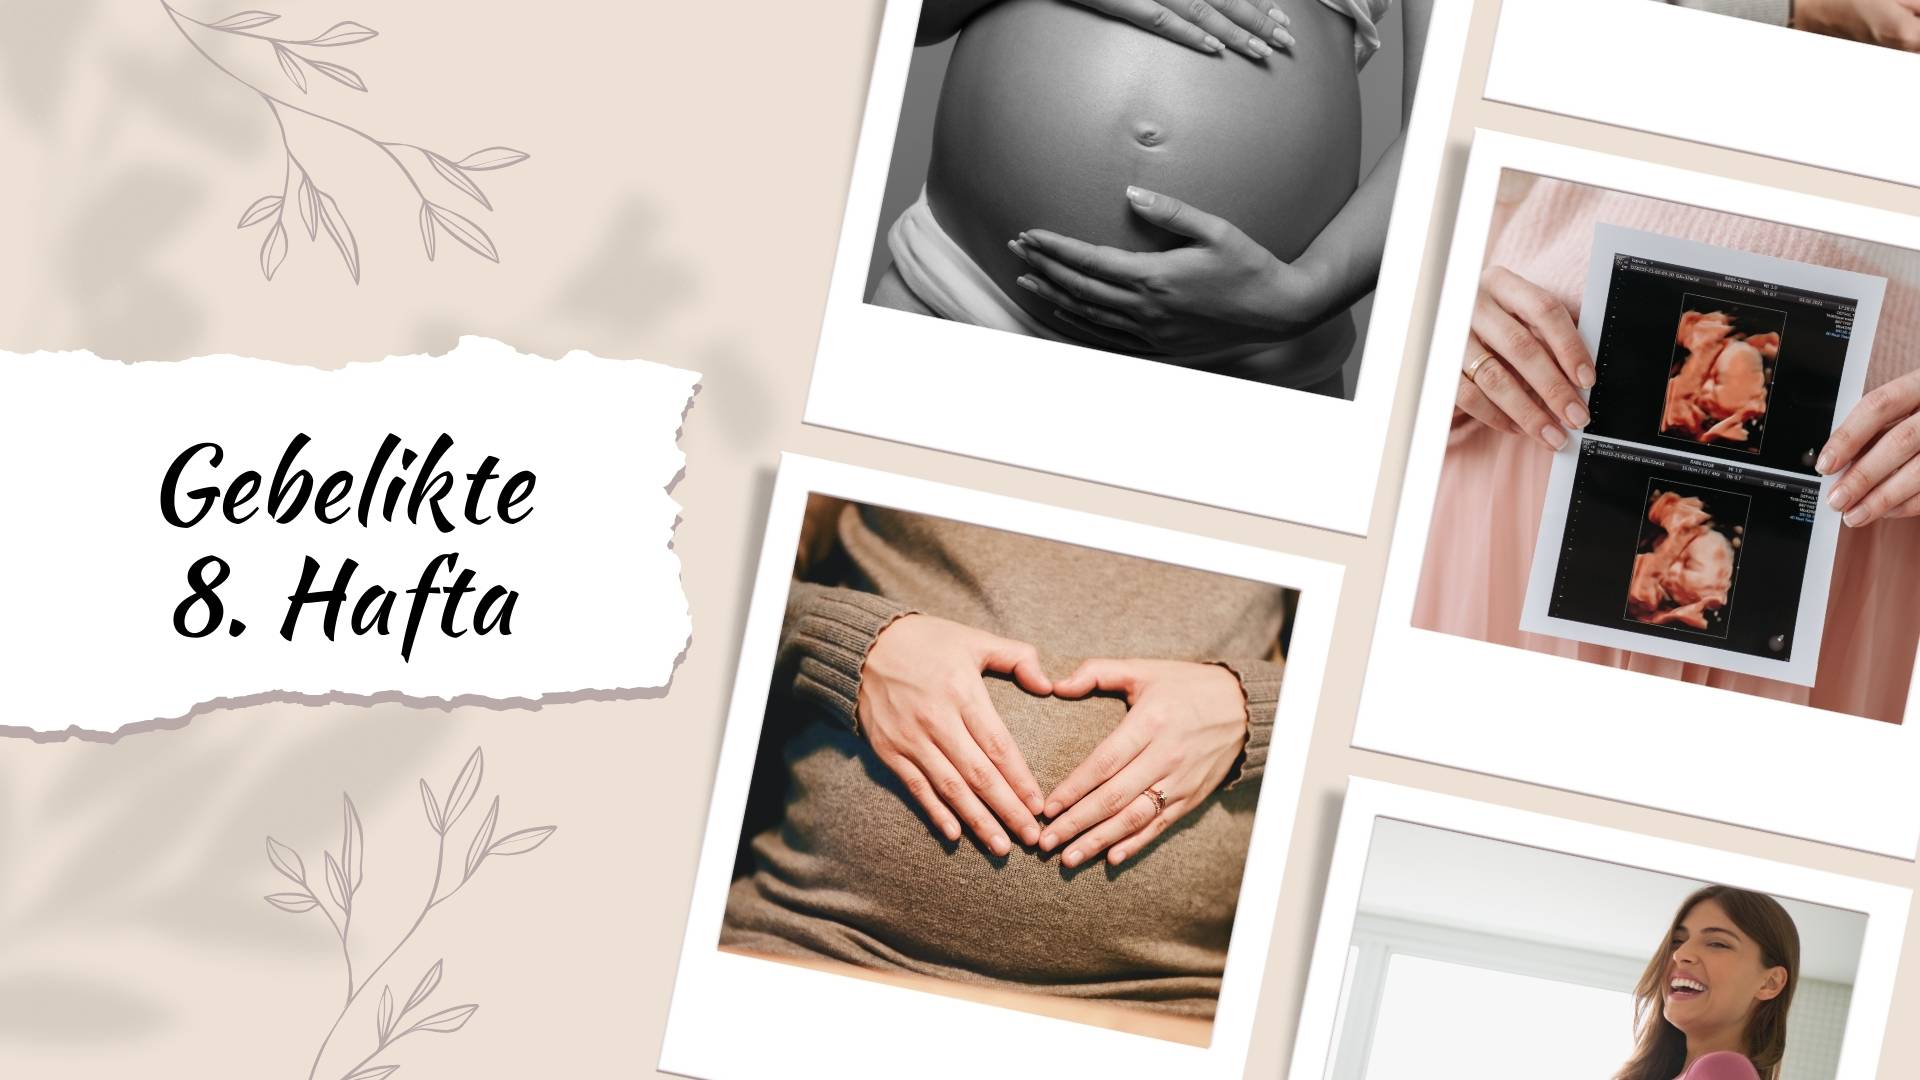 8 hafta gebelik döneminde nelere dikkat etmeli? Beslenme, egzersiz, doktor ziyaretleri, ruhsal değişimler ve bebek odası hazırlıkları hakkında bilgi alın.